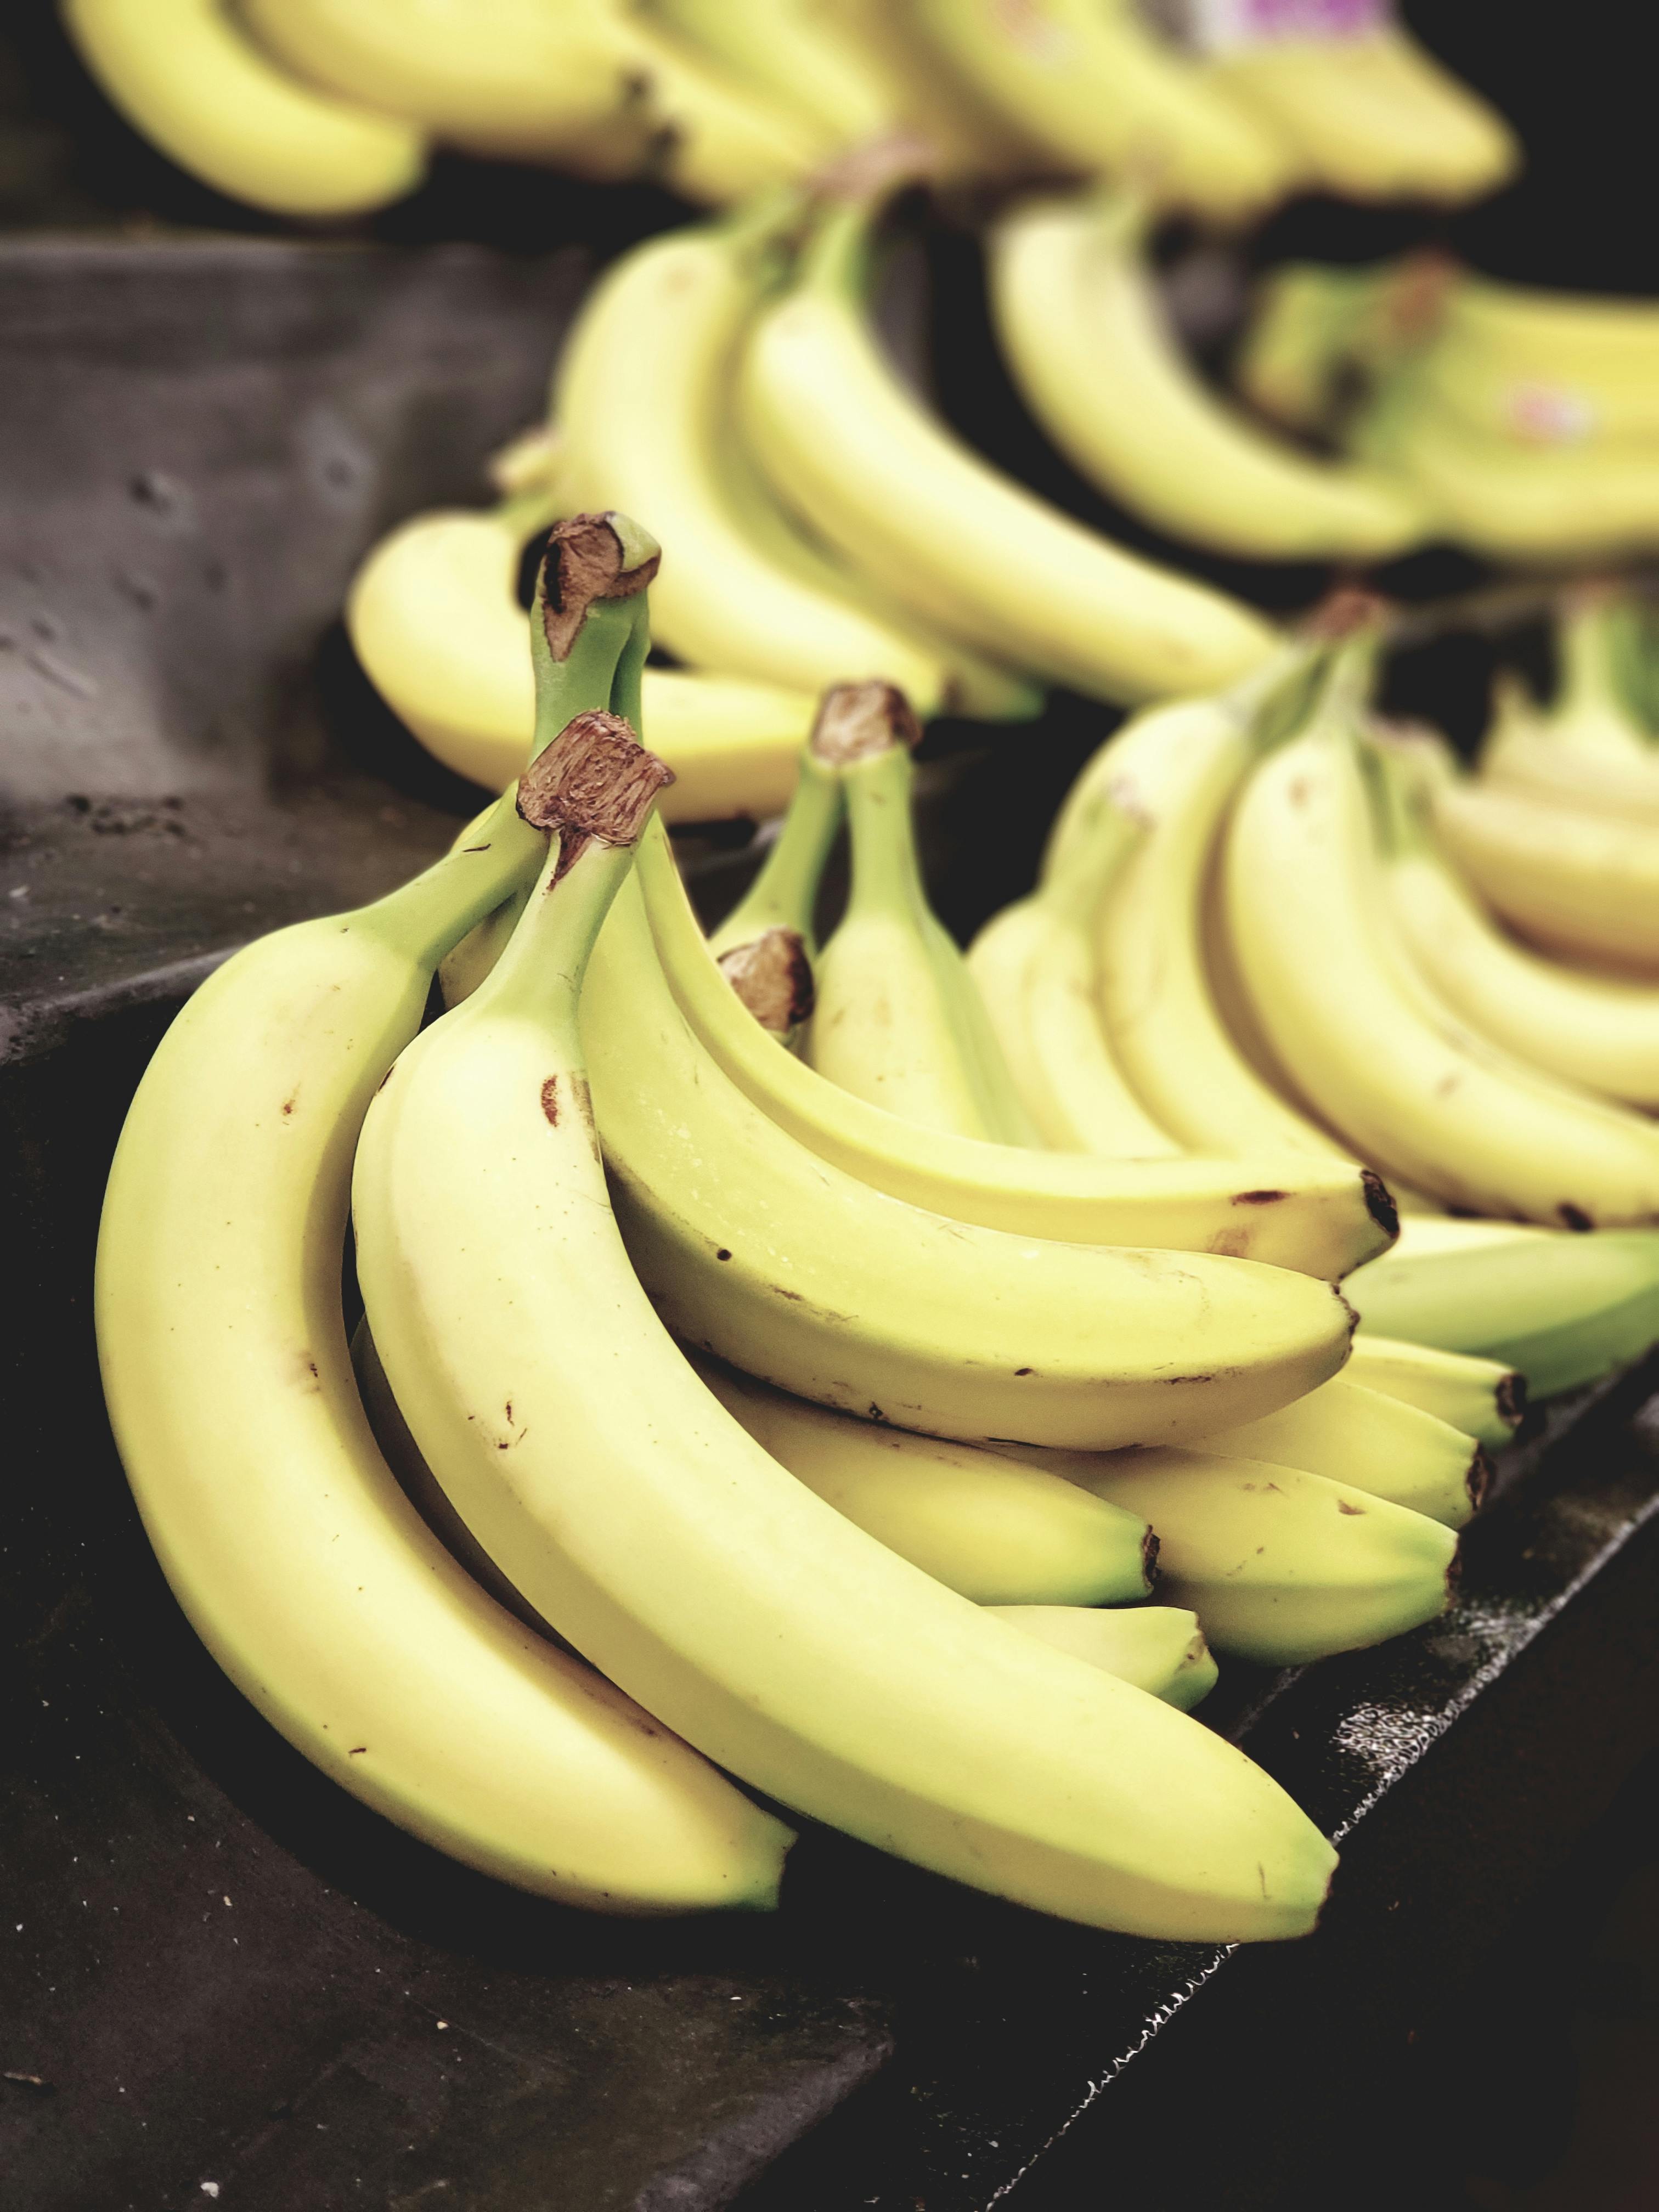 Kostenloses Foto zum Thema: bananen, bündel, diät